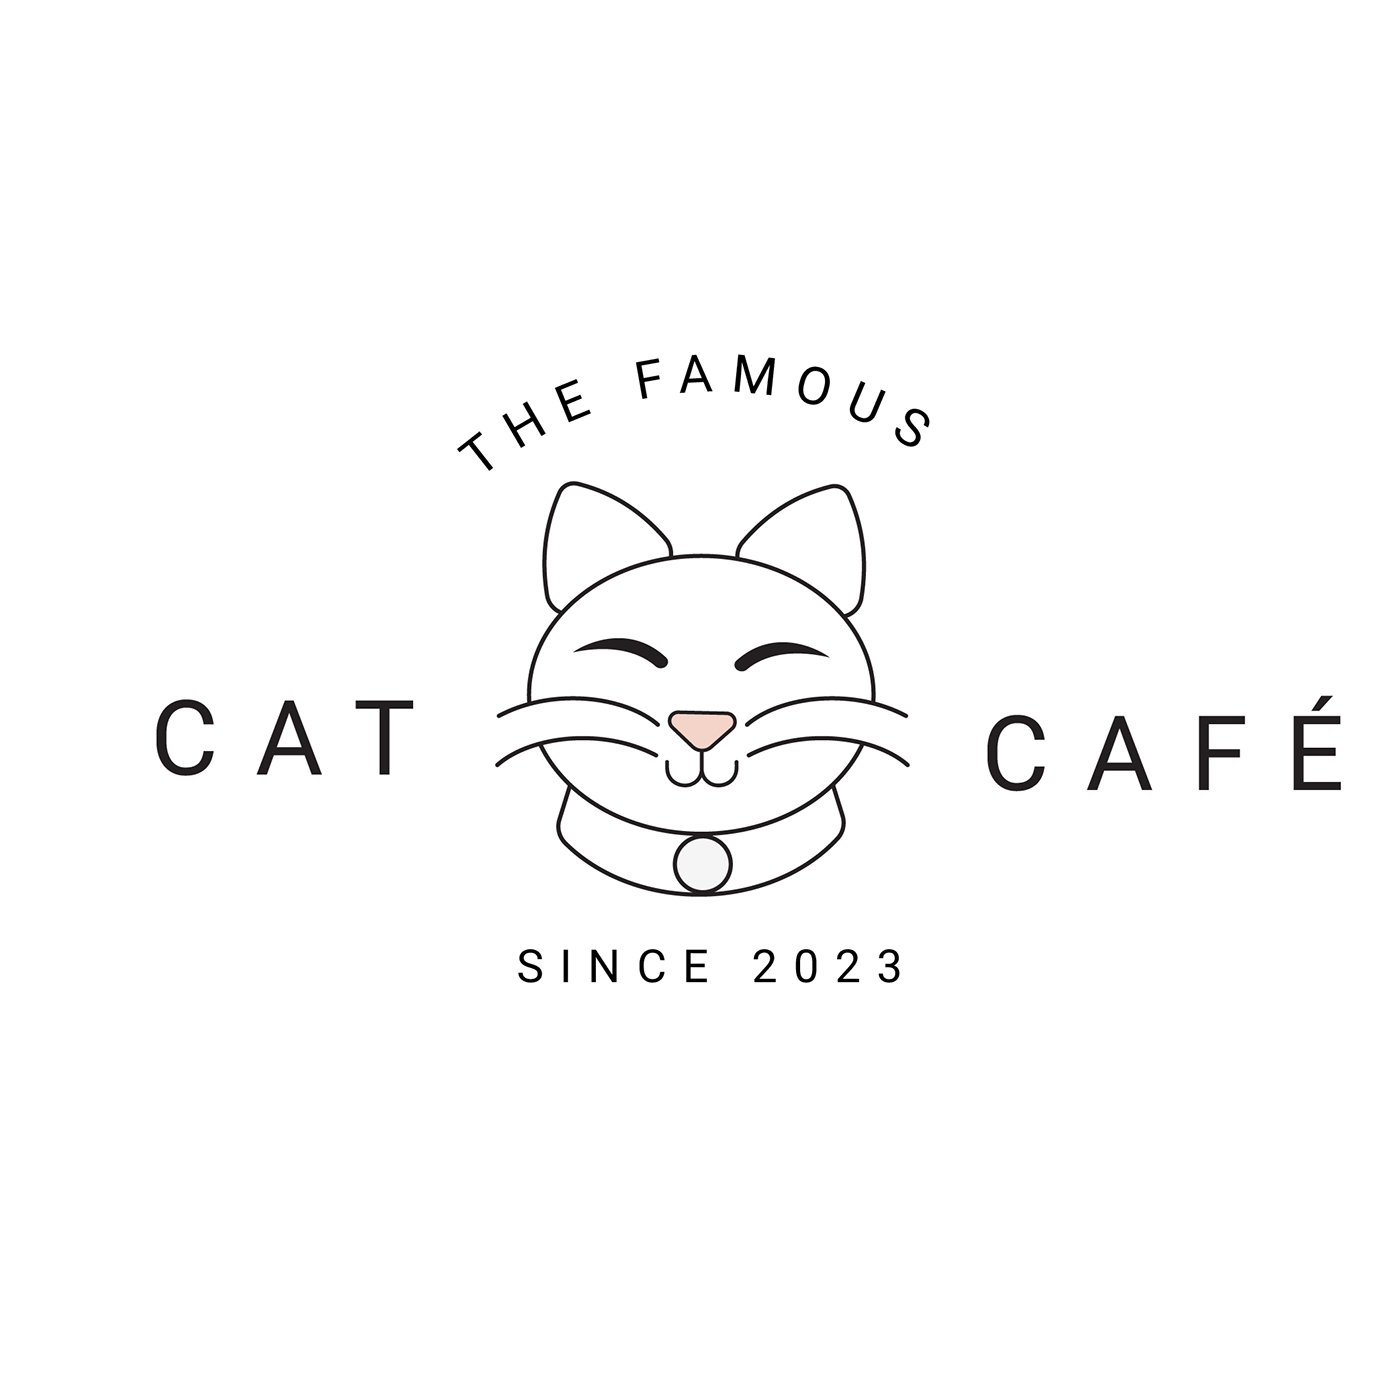 logo Logo Design logo cafe Logo Coffee logotype designer Brand Design Logotype cute logo Mascot logo cat